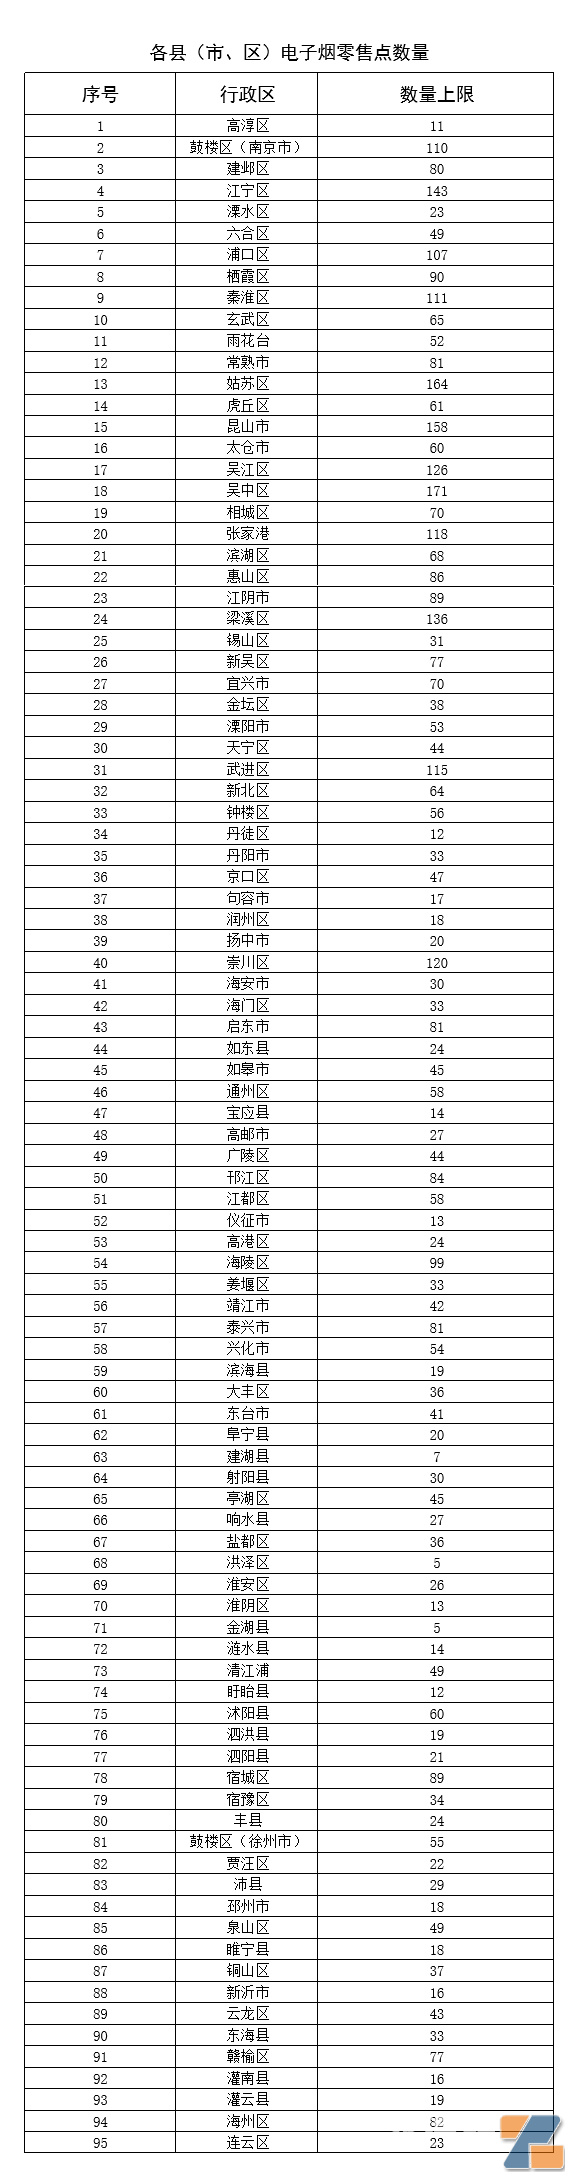 江苏省各县（市、区）电子烟零售点数量总览表